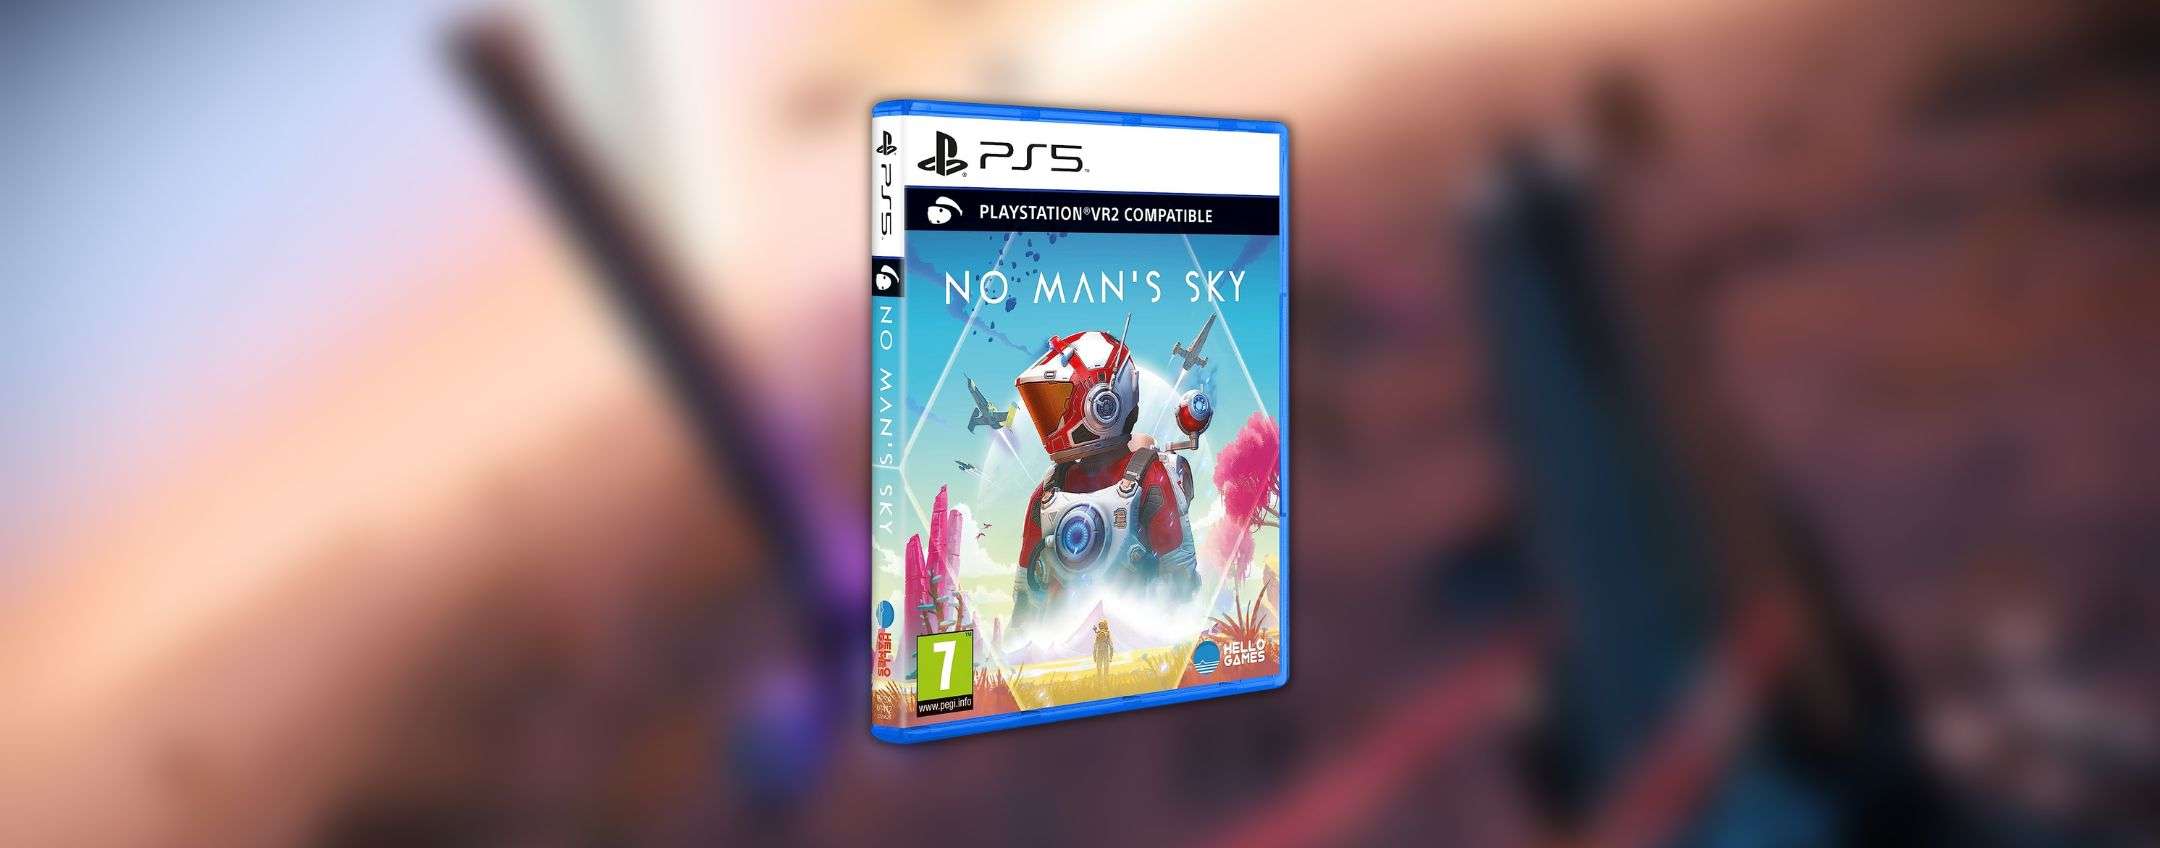 No Man's Sky per PS5 a metà prezzo grazie alle Offerte di Primavera